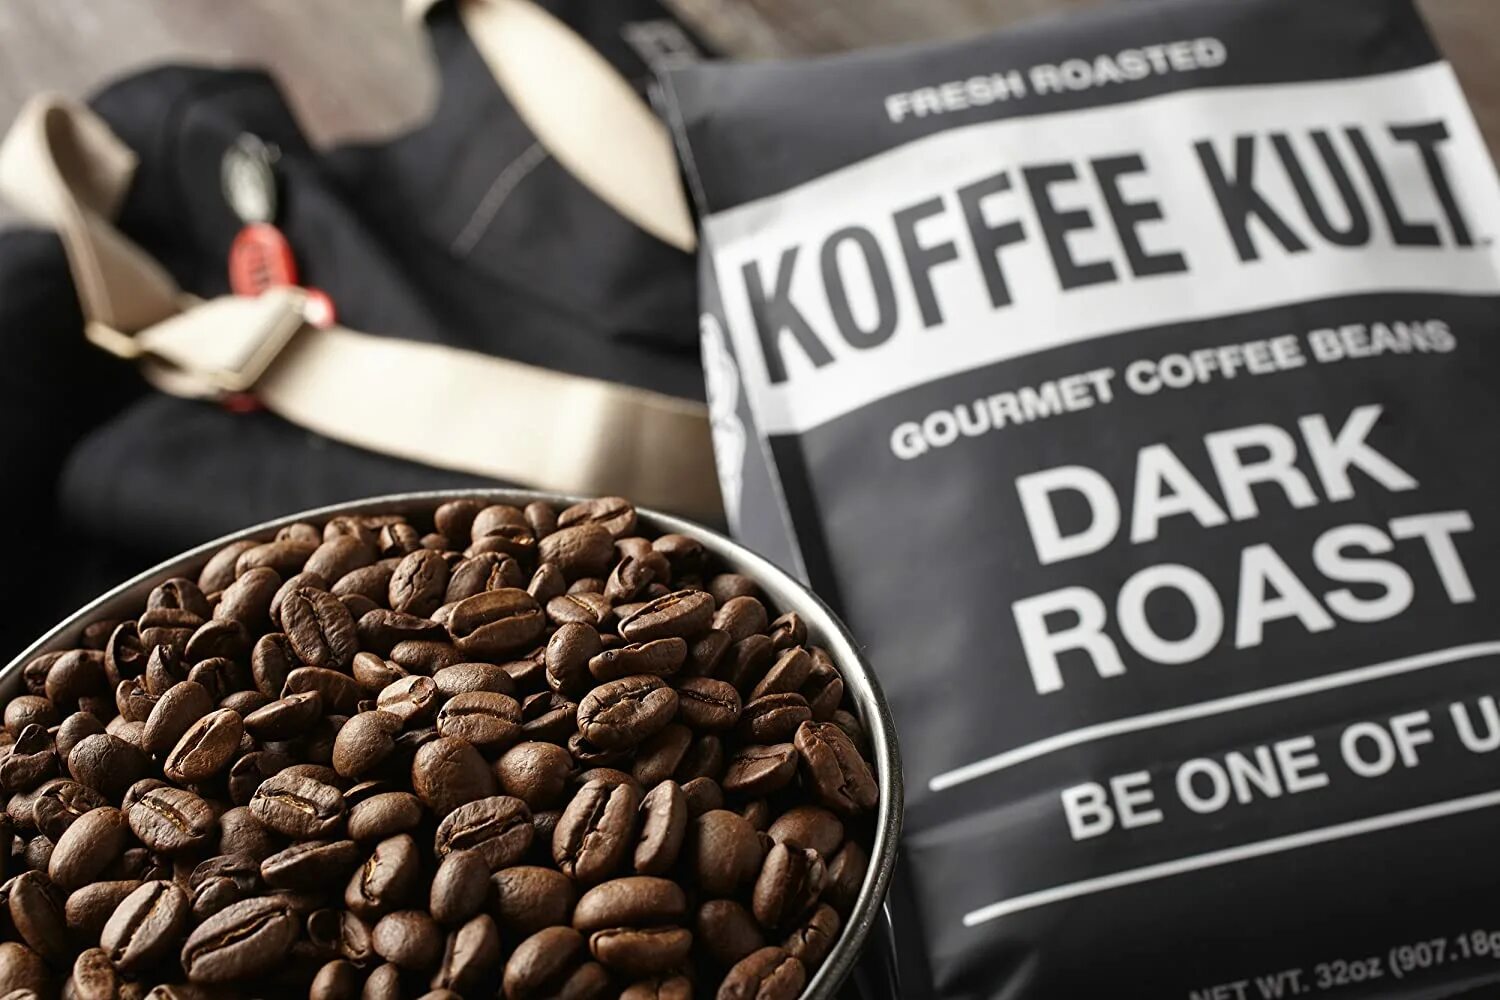 Кофе дарк. Кофе эспрессо Roasted Coffee Beans. Dark Roast кофе. Black Roast кофе. Сложный кофе.